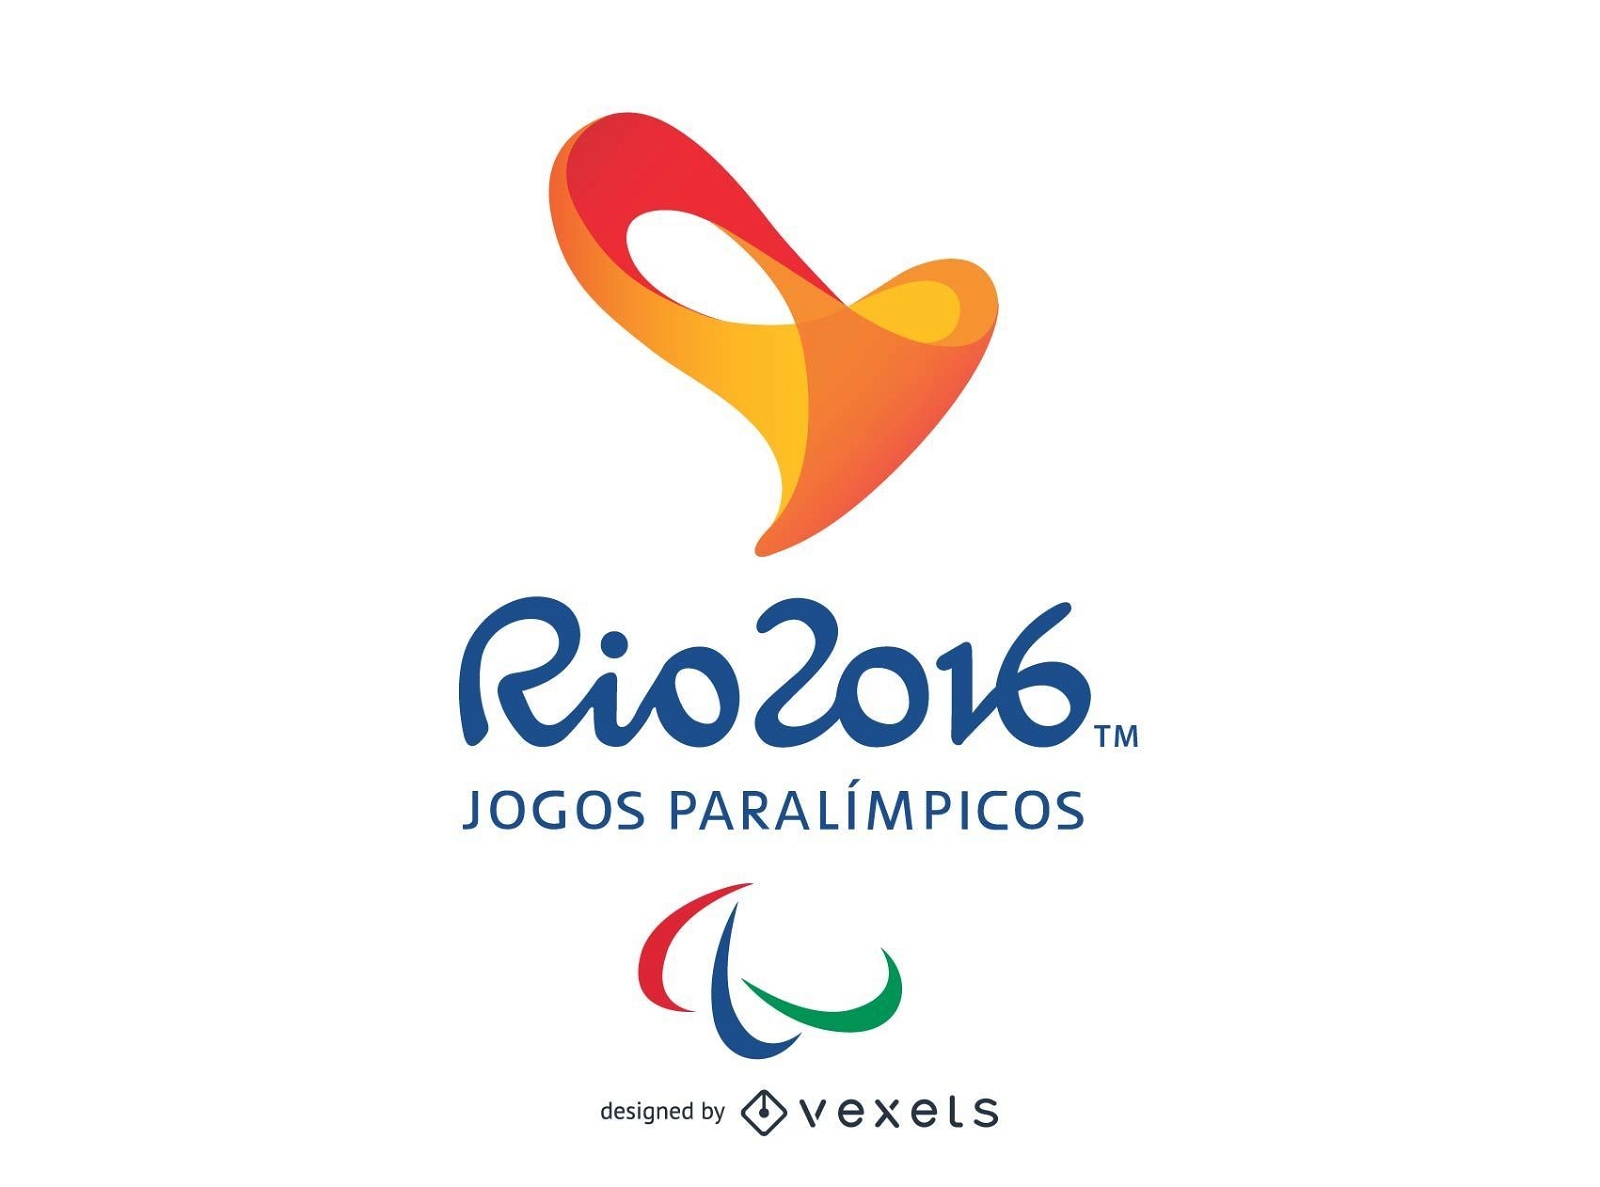 Juegos Paral?mpicos Rio 2016